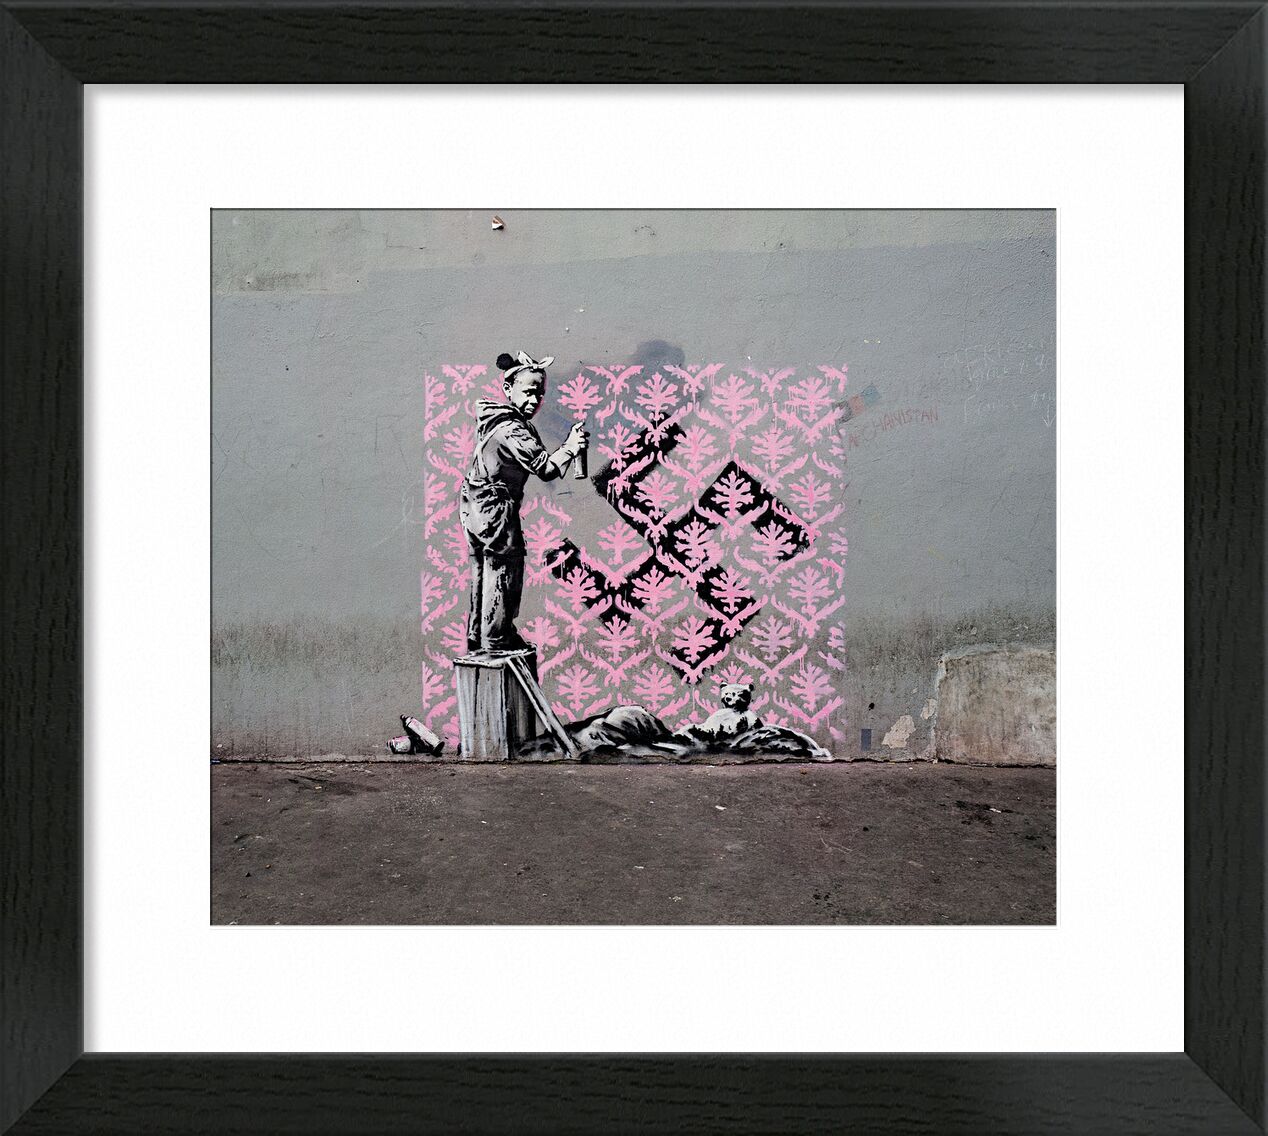 Schwarzes Mädchen versteckt Hakenkreuz - Banksy von Bildende Kunst, Prodi Art, banksy, Straßenkunst, Hakenkreuz